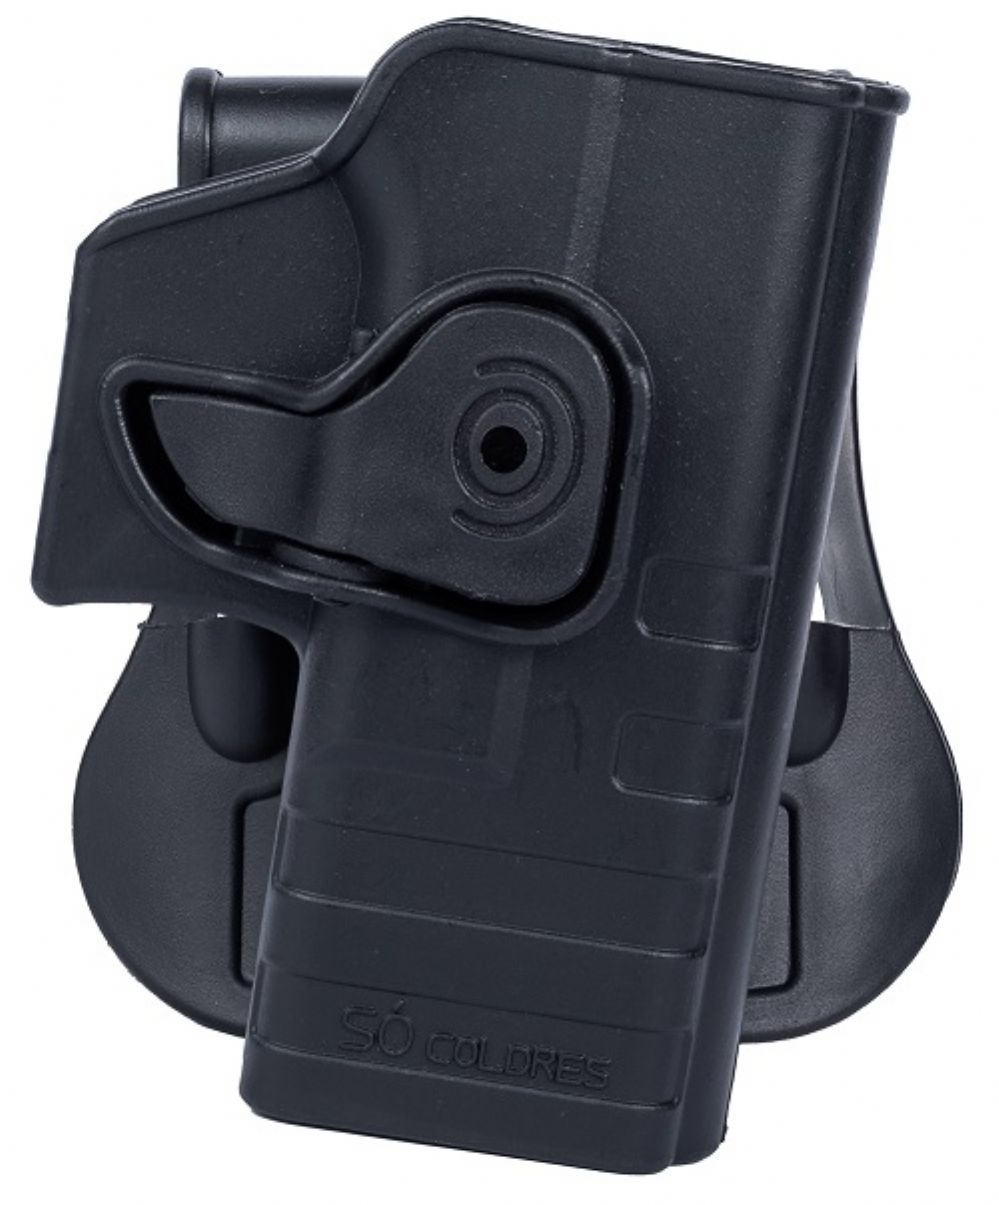 Coldre Ostensivo Polmero Glock G19 / G23 / G25 - Destro